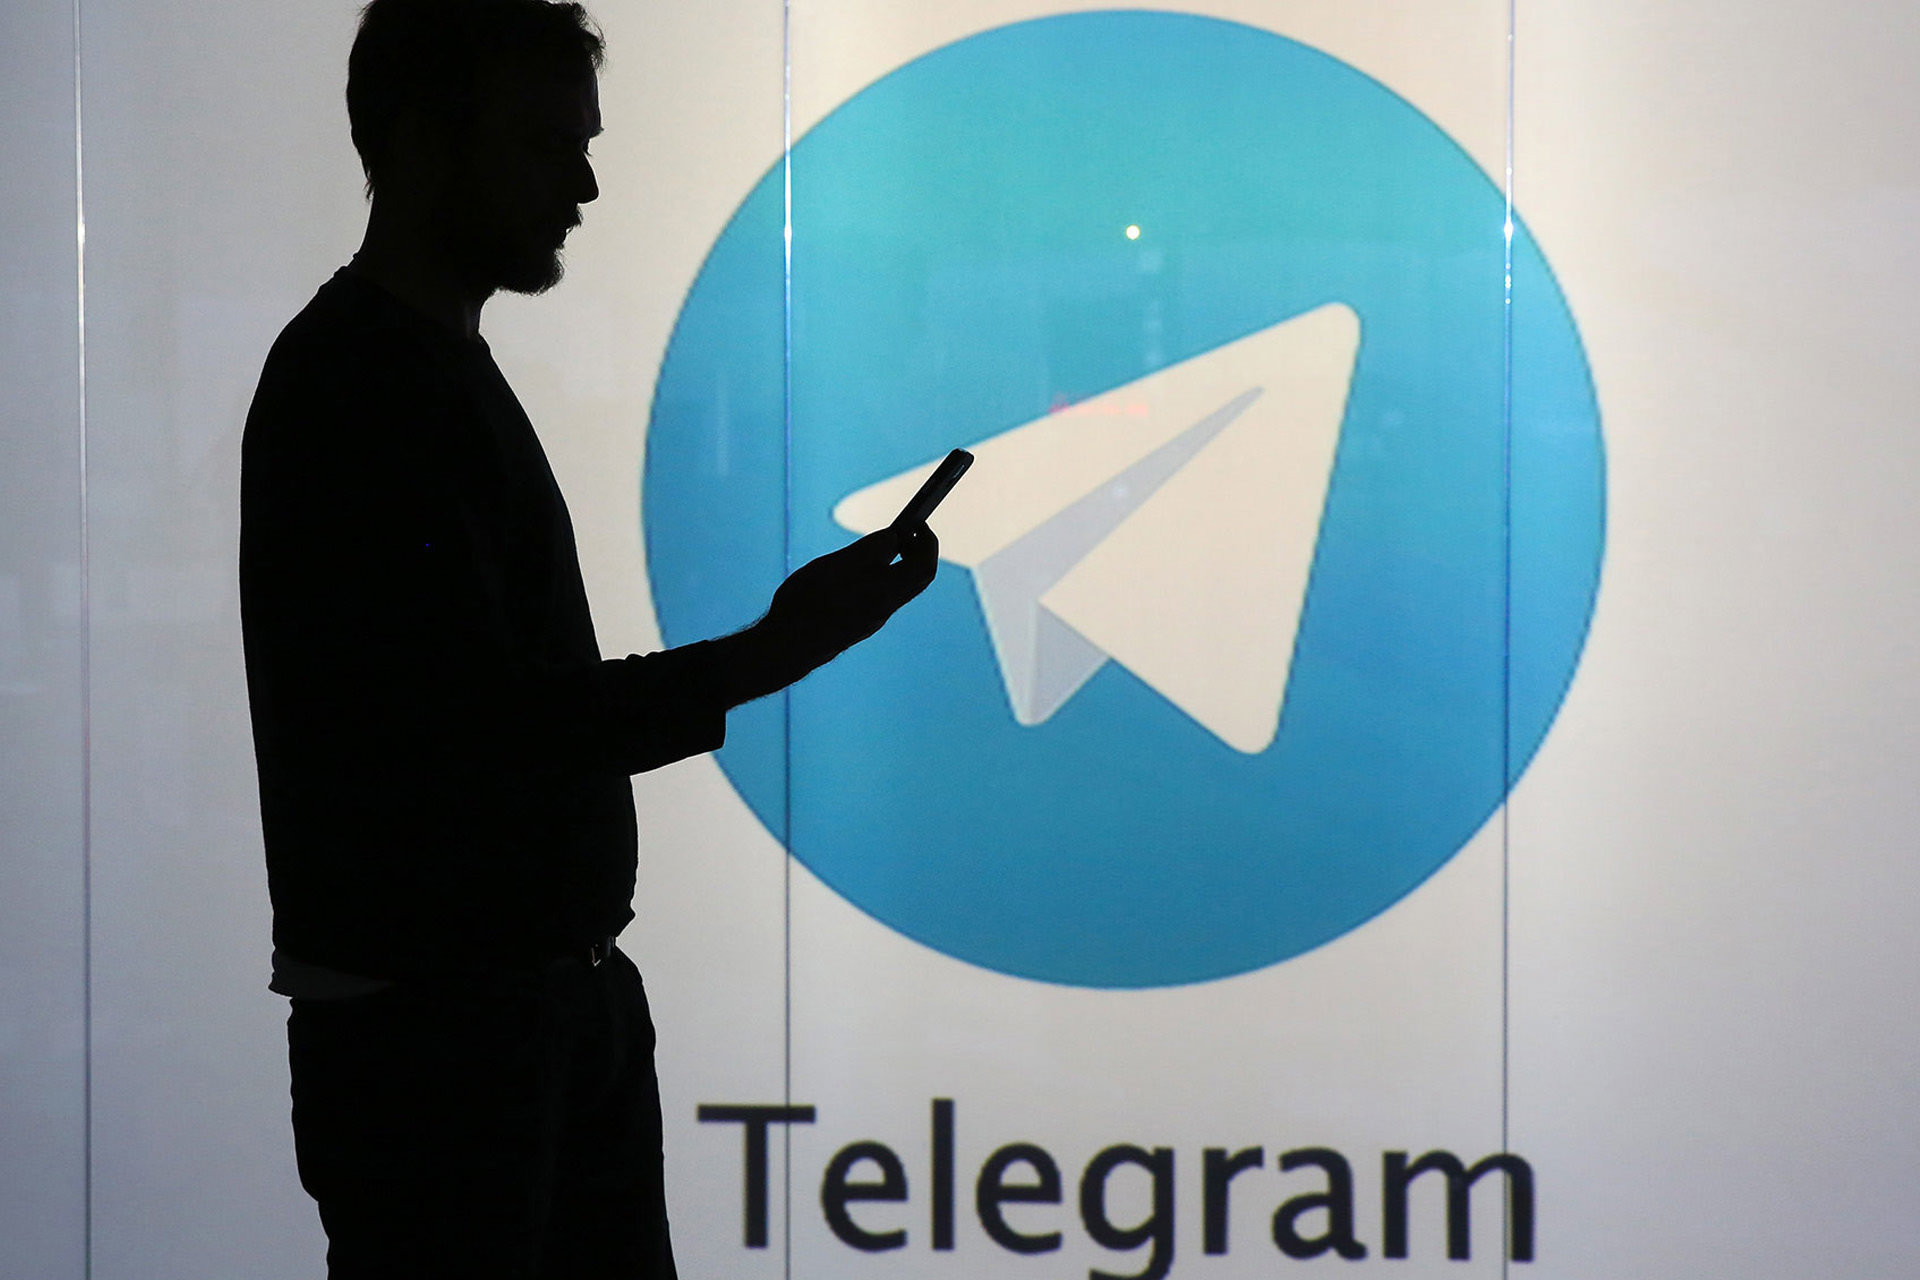 سایه مرد با لوگوی تلگرام در پس زمینه